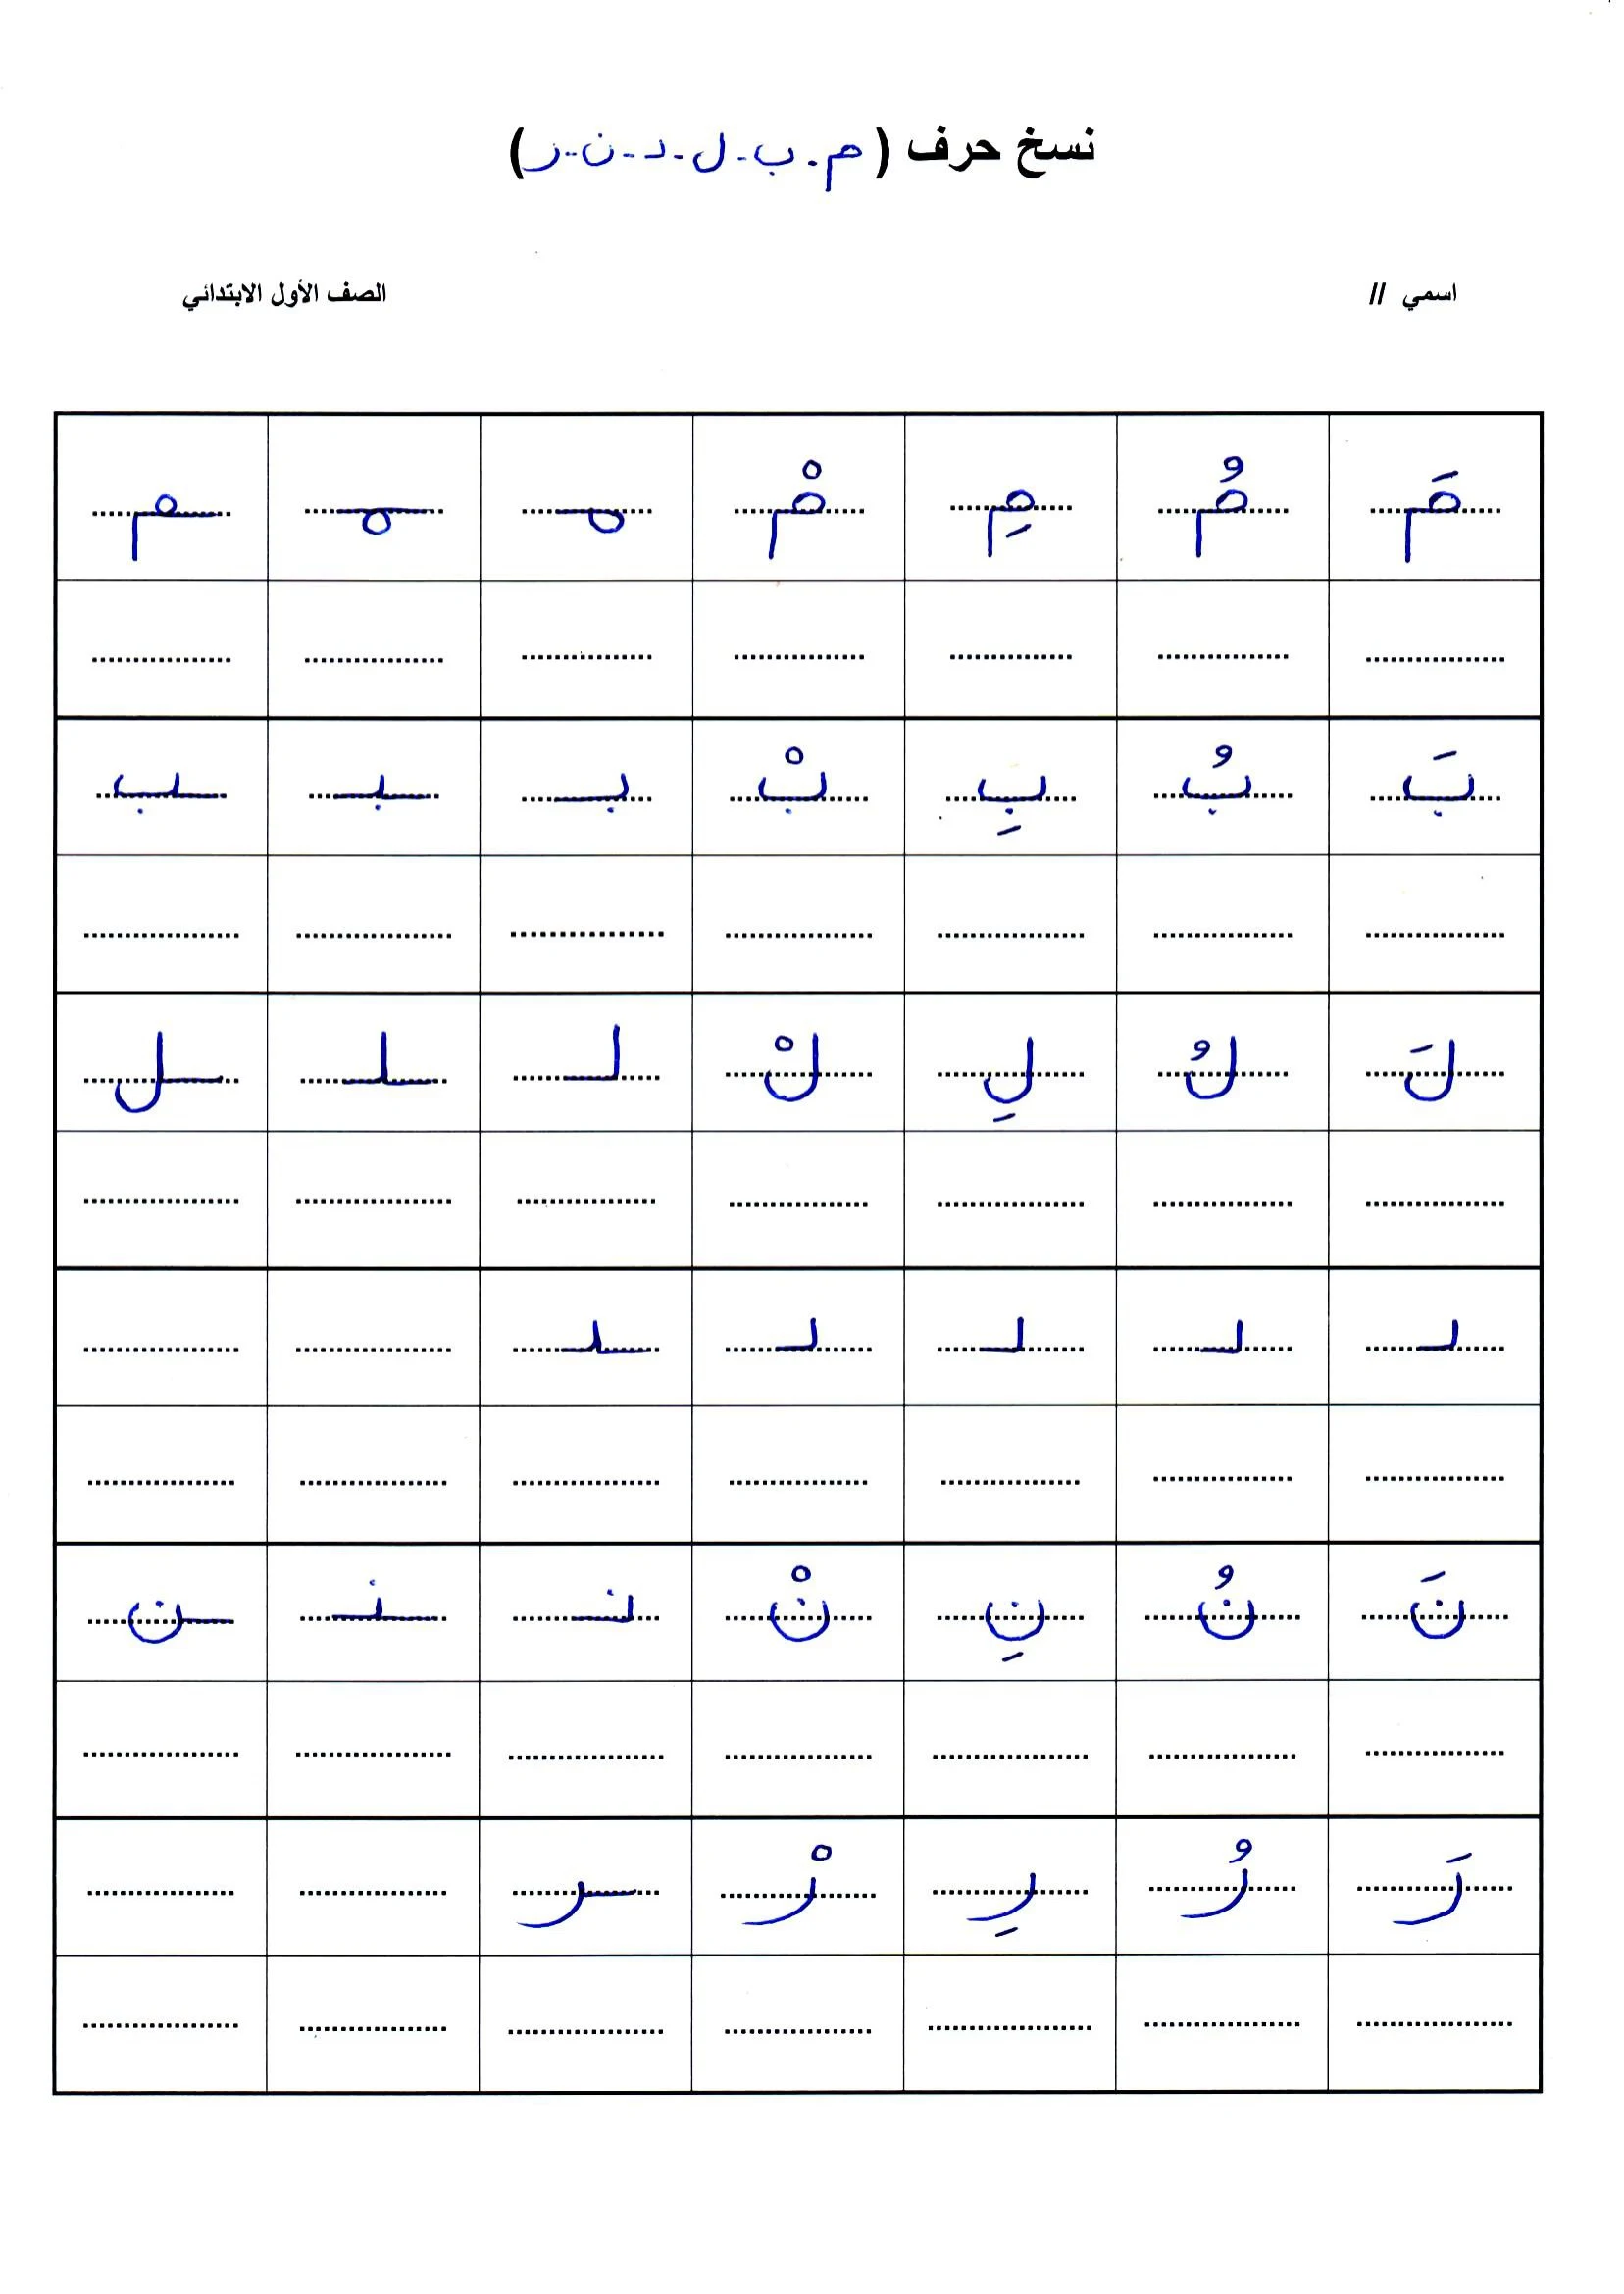 ورقة عمل نسخ حروف الوحدة الأولى  للصف الأول الابتدائي pdf